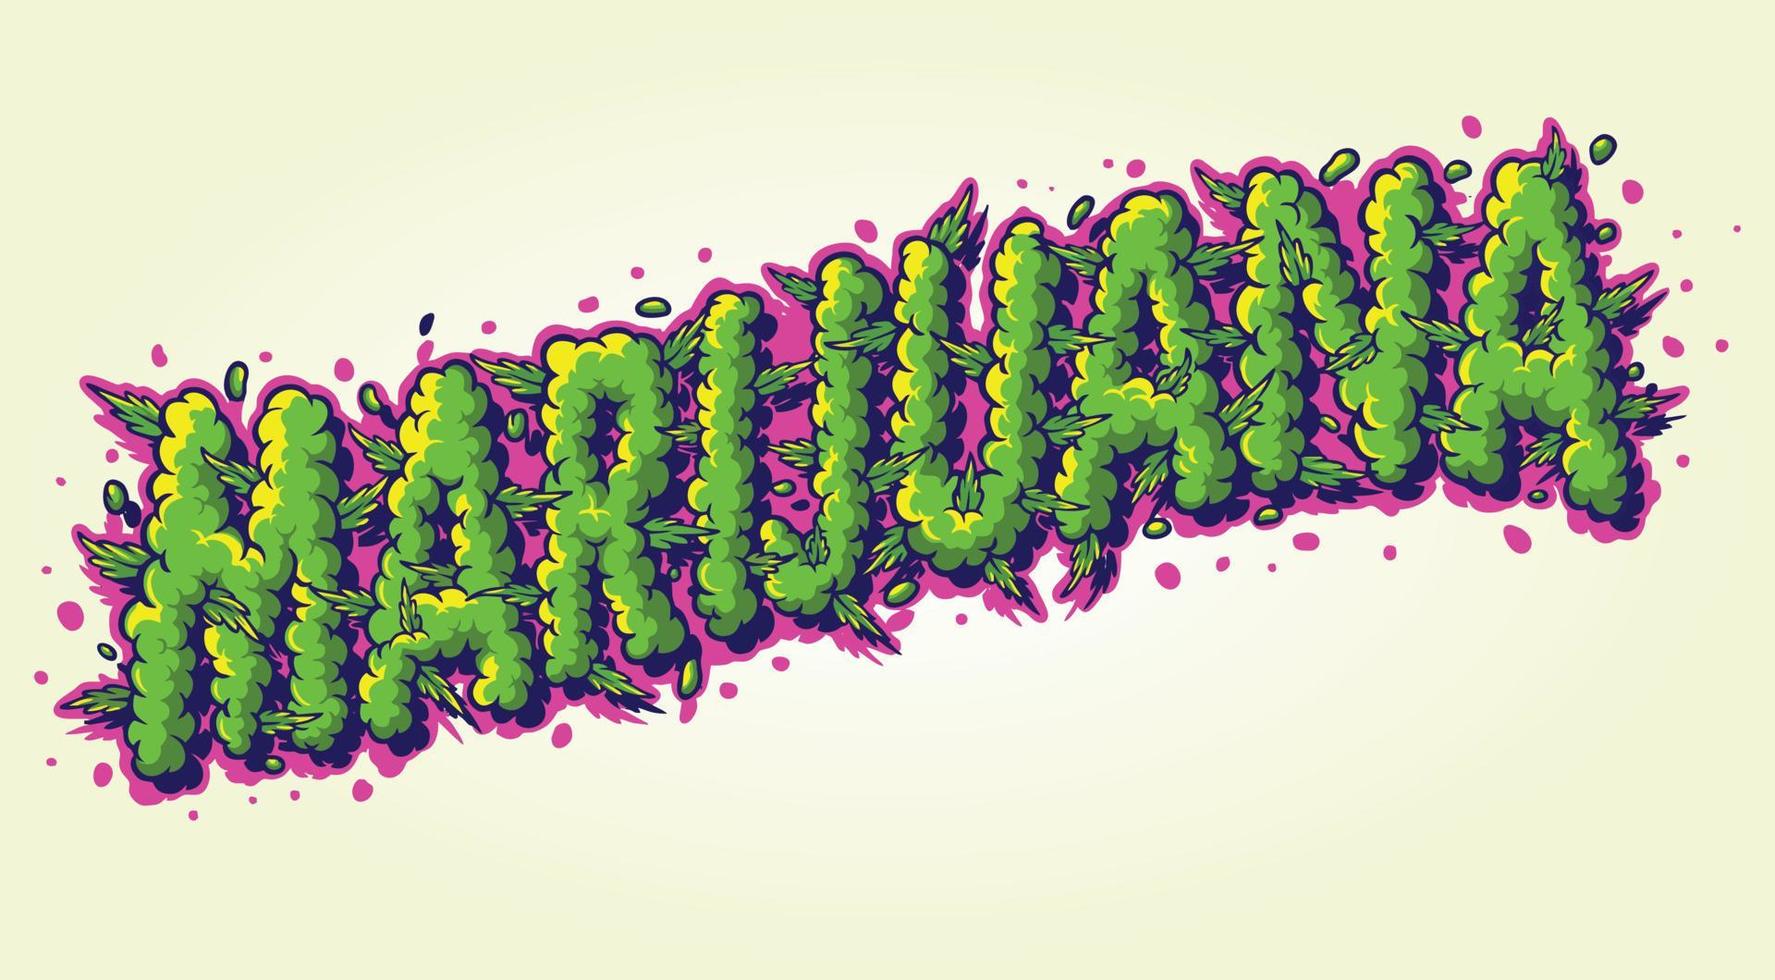 belettering woorden marihuana met rook onkruid effect illustratie vector